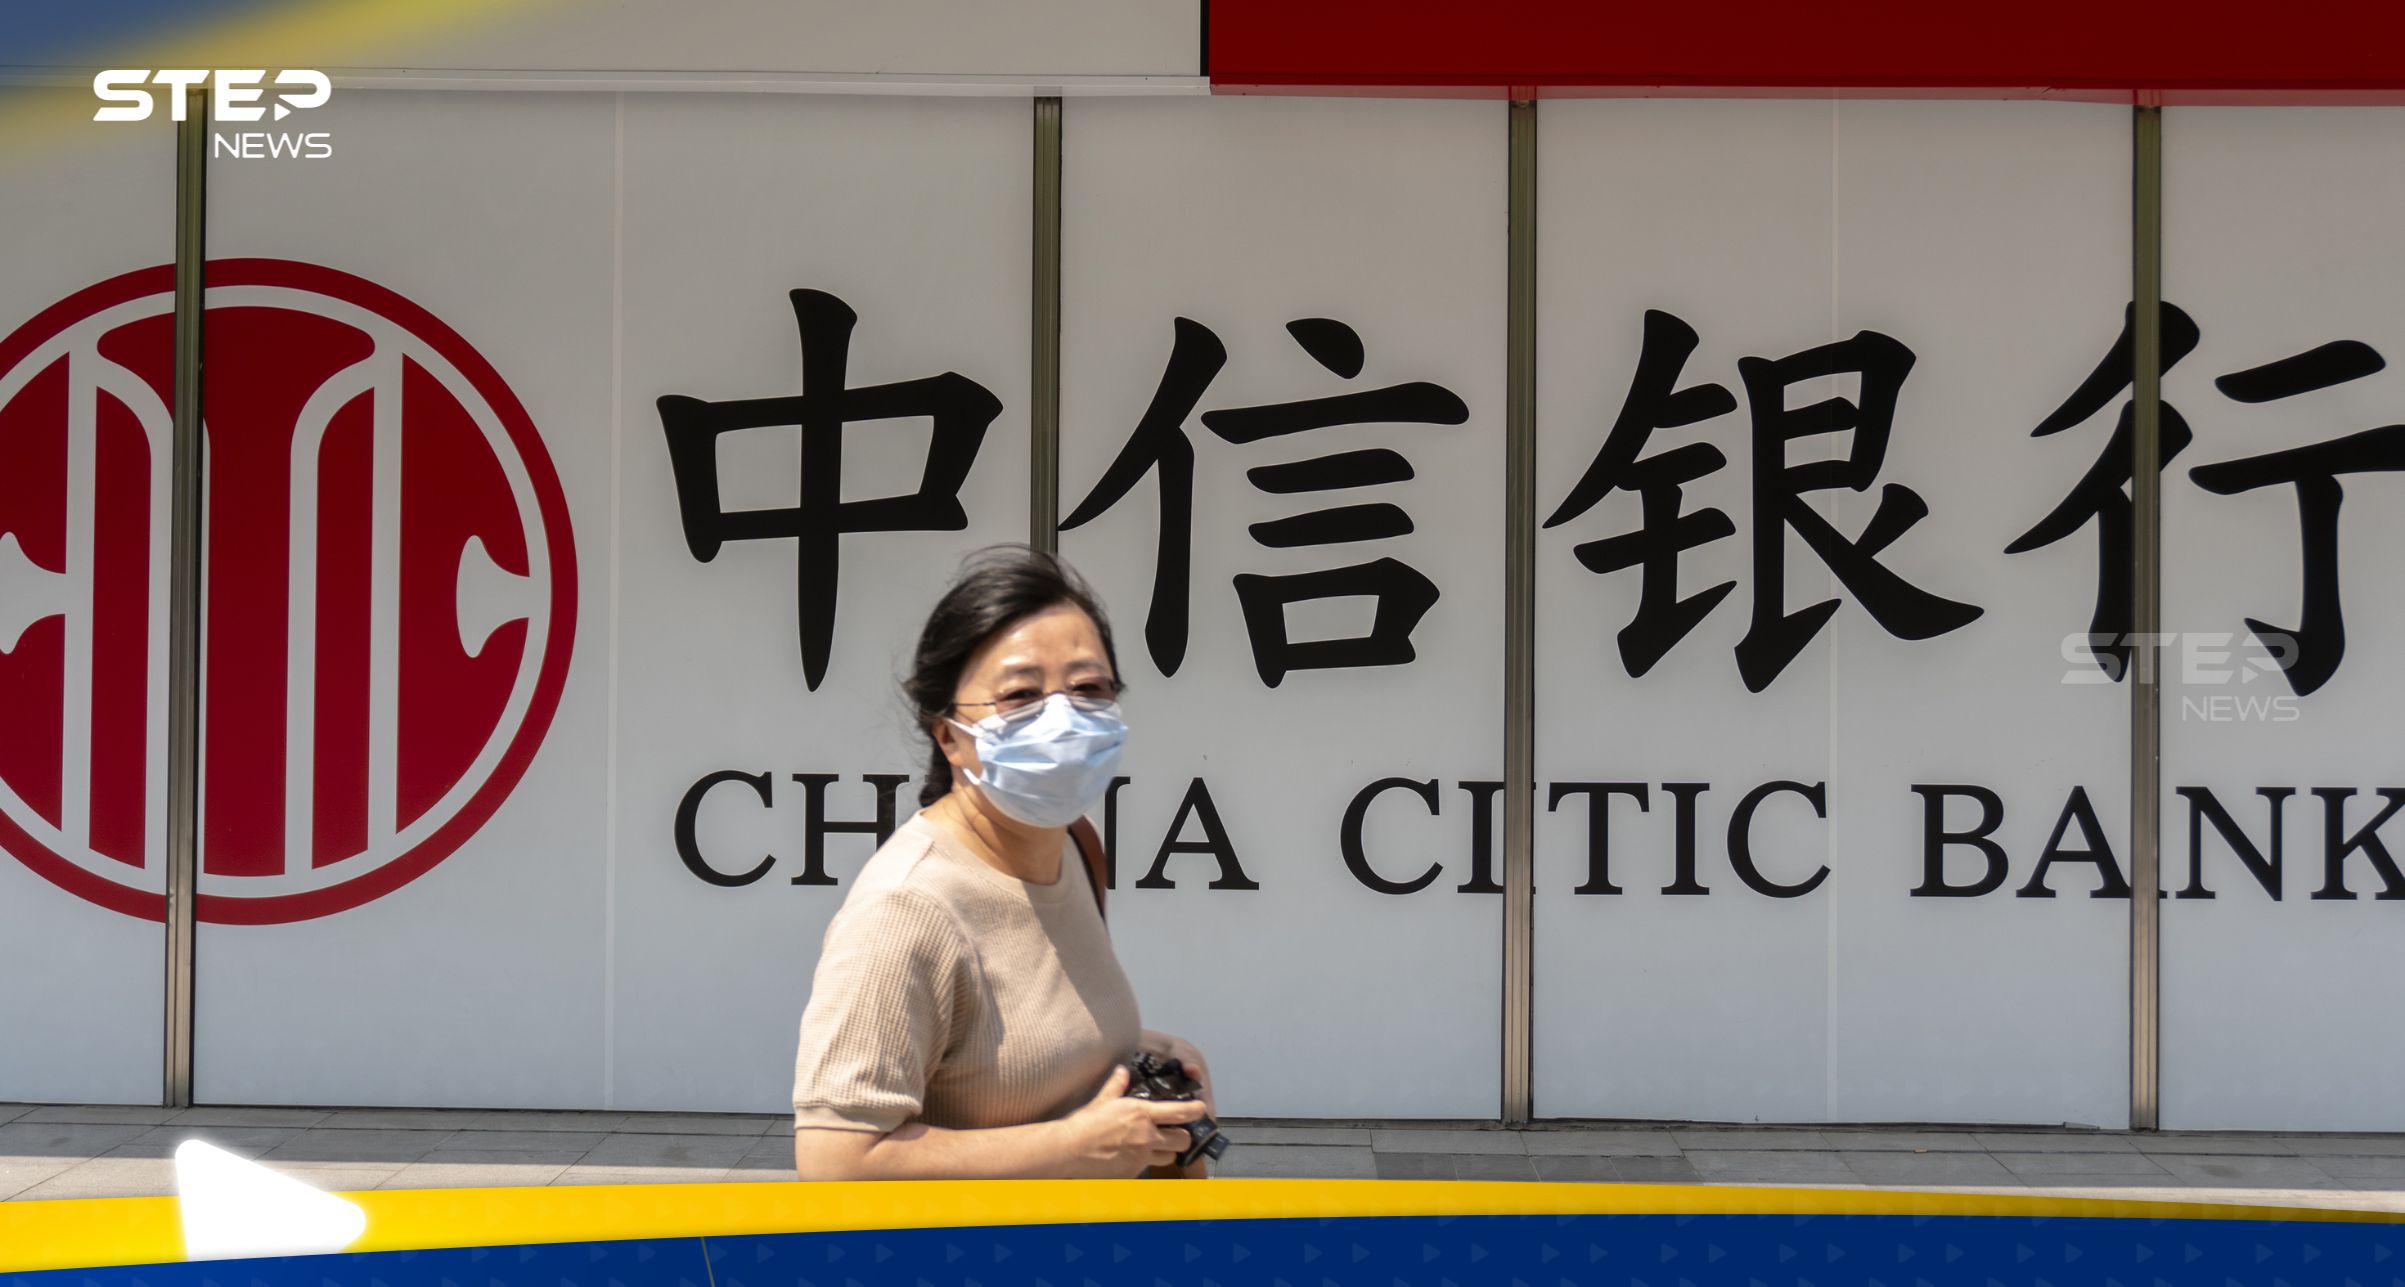 حكم "غير متوقع" على رئيس بنك صيني سابق أدين بالرشوة